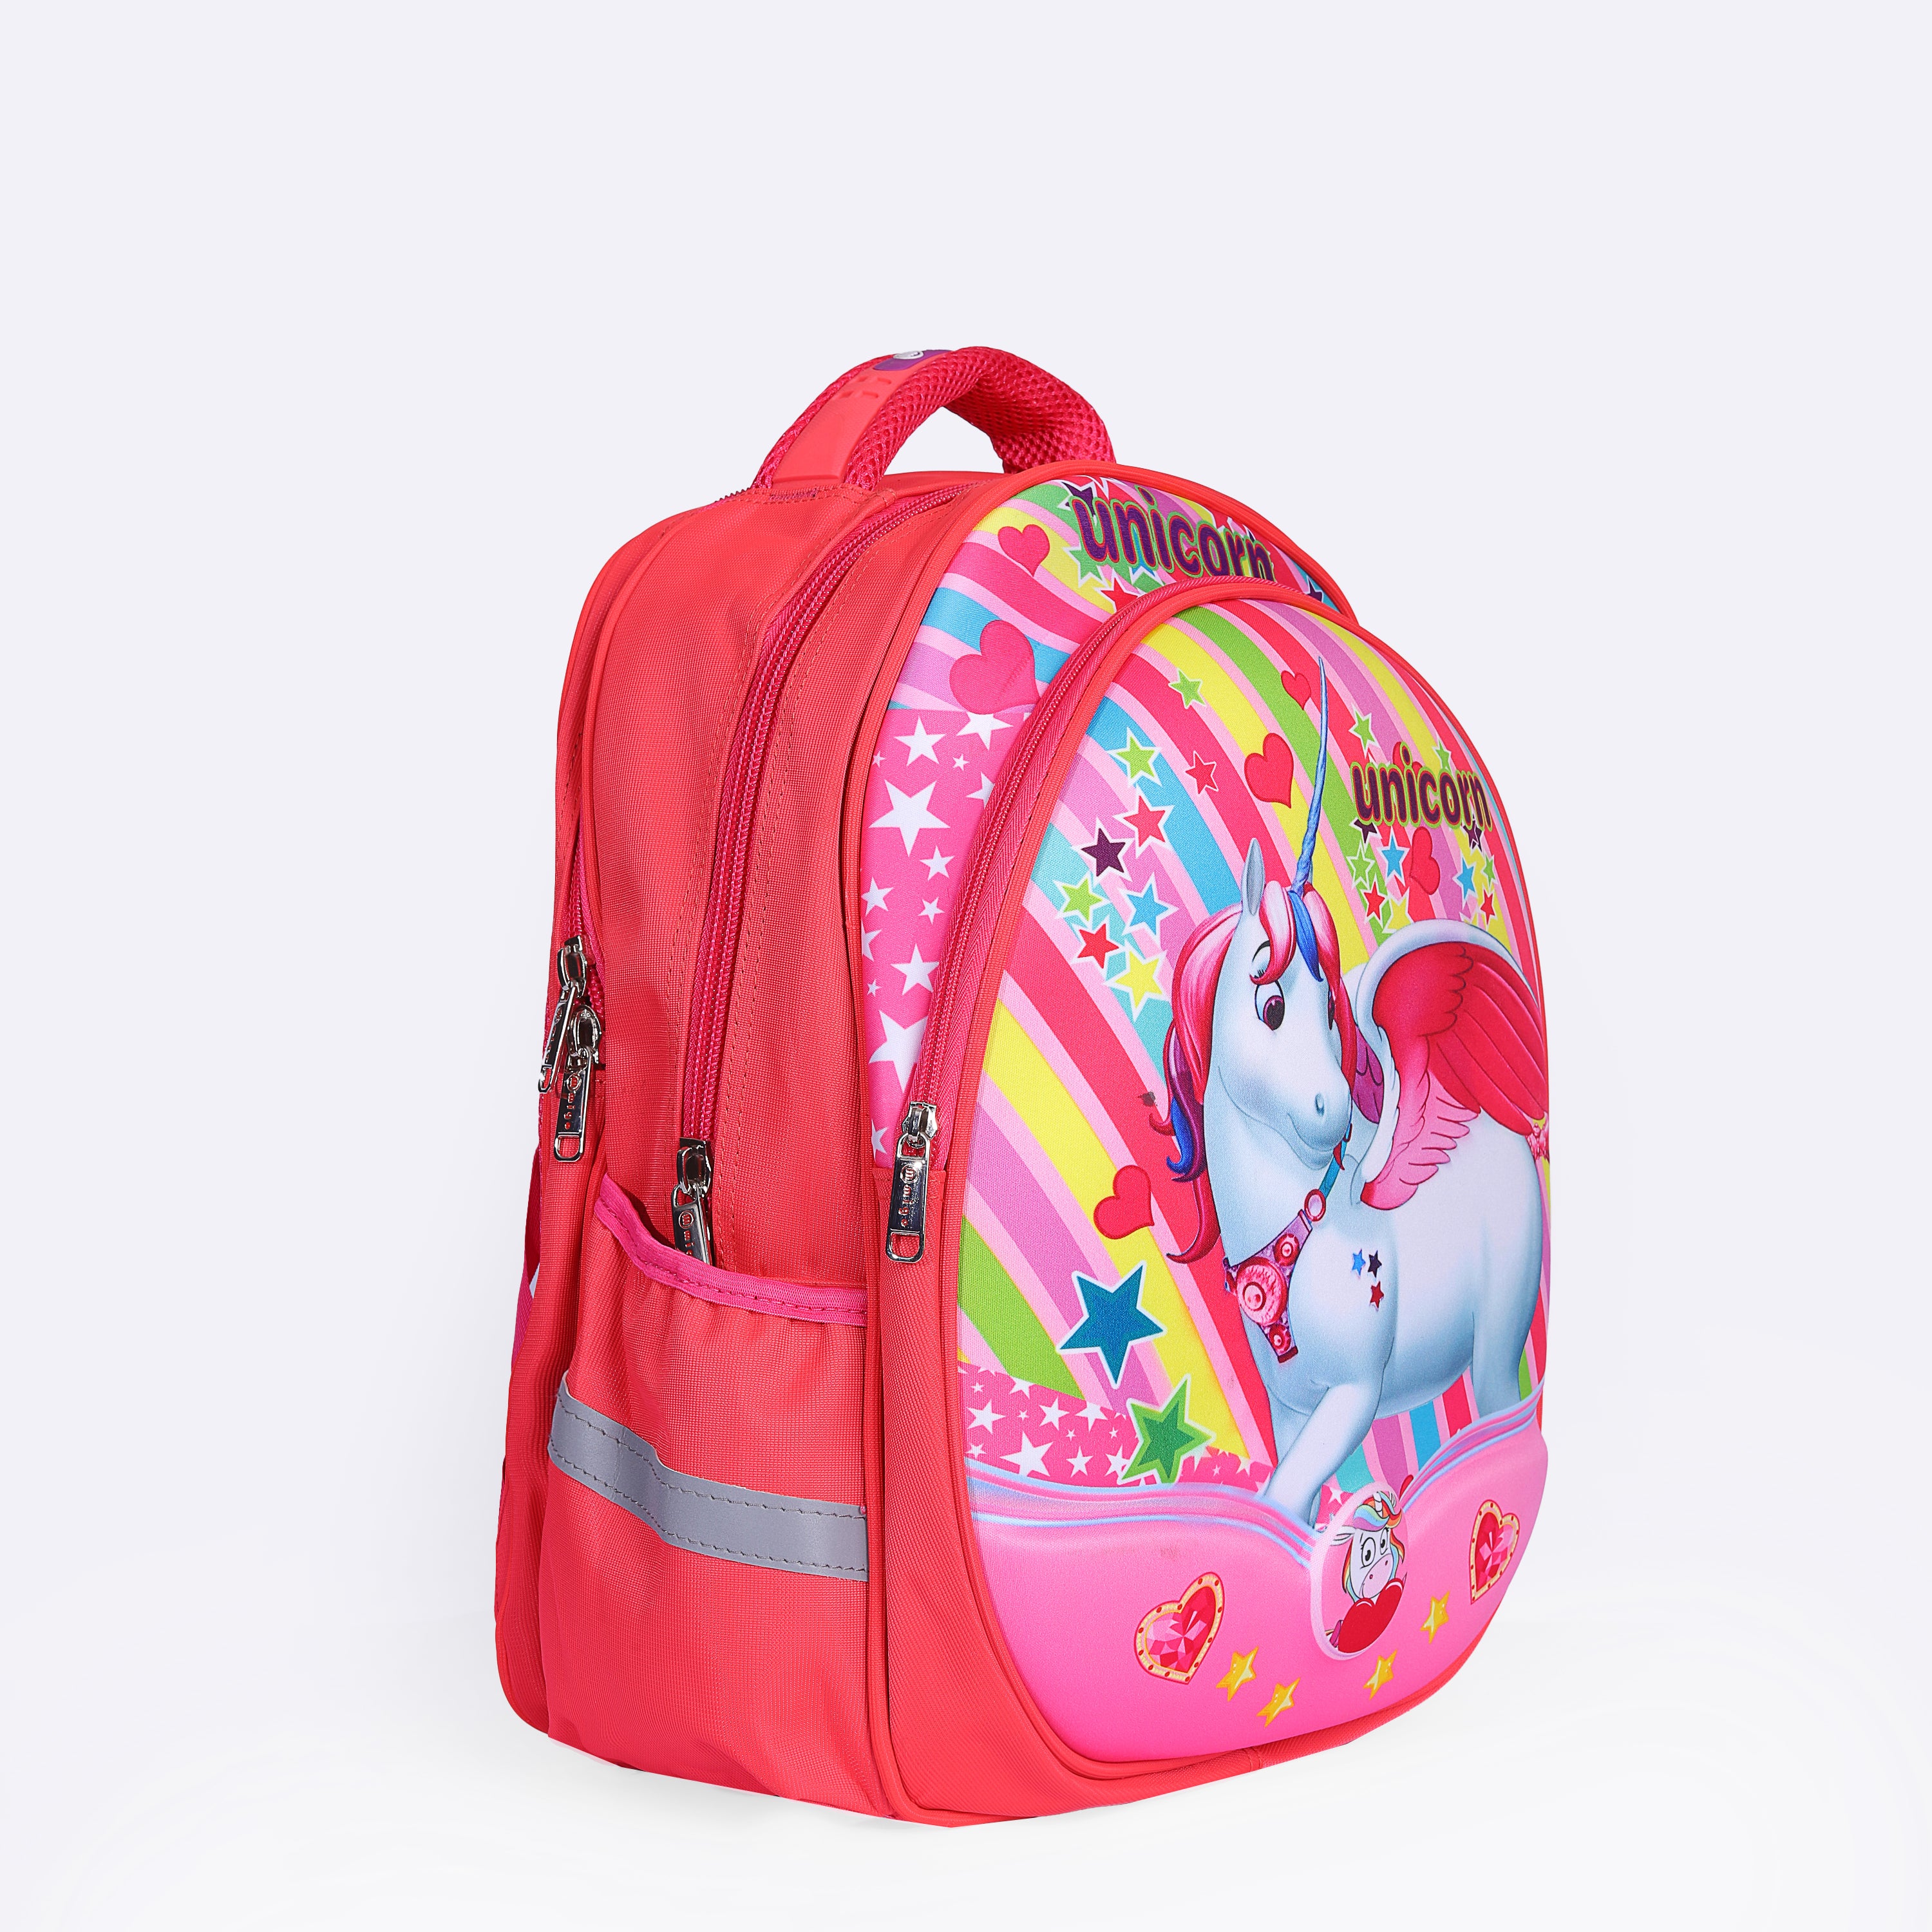 Unicorn II Bag For Girls